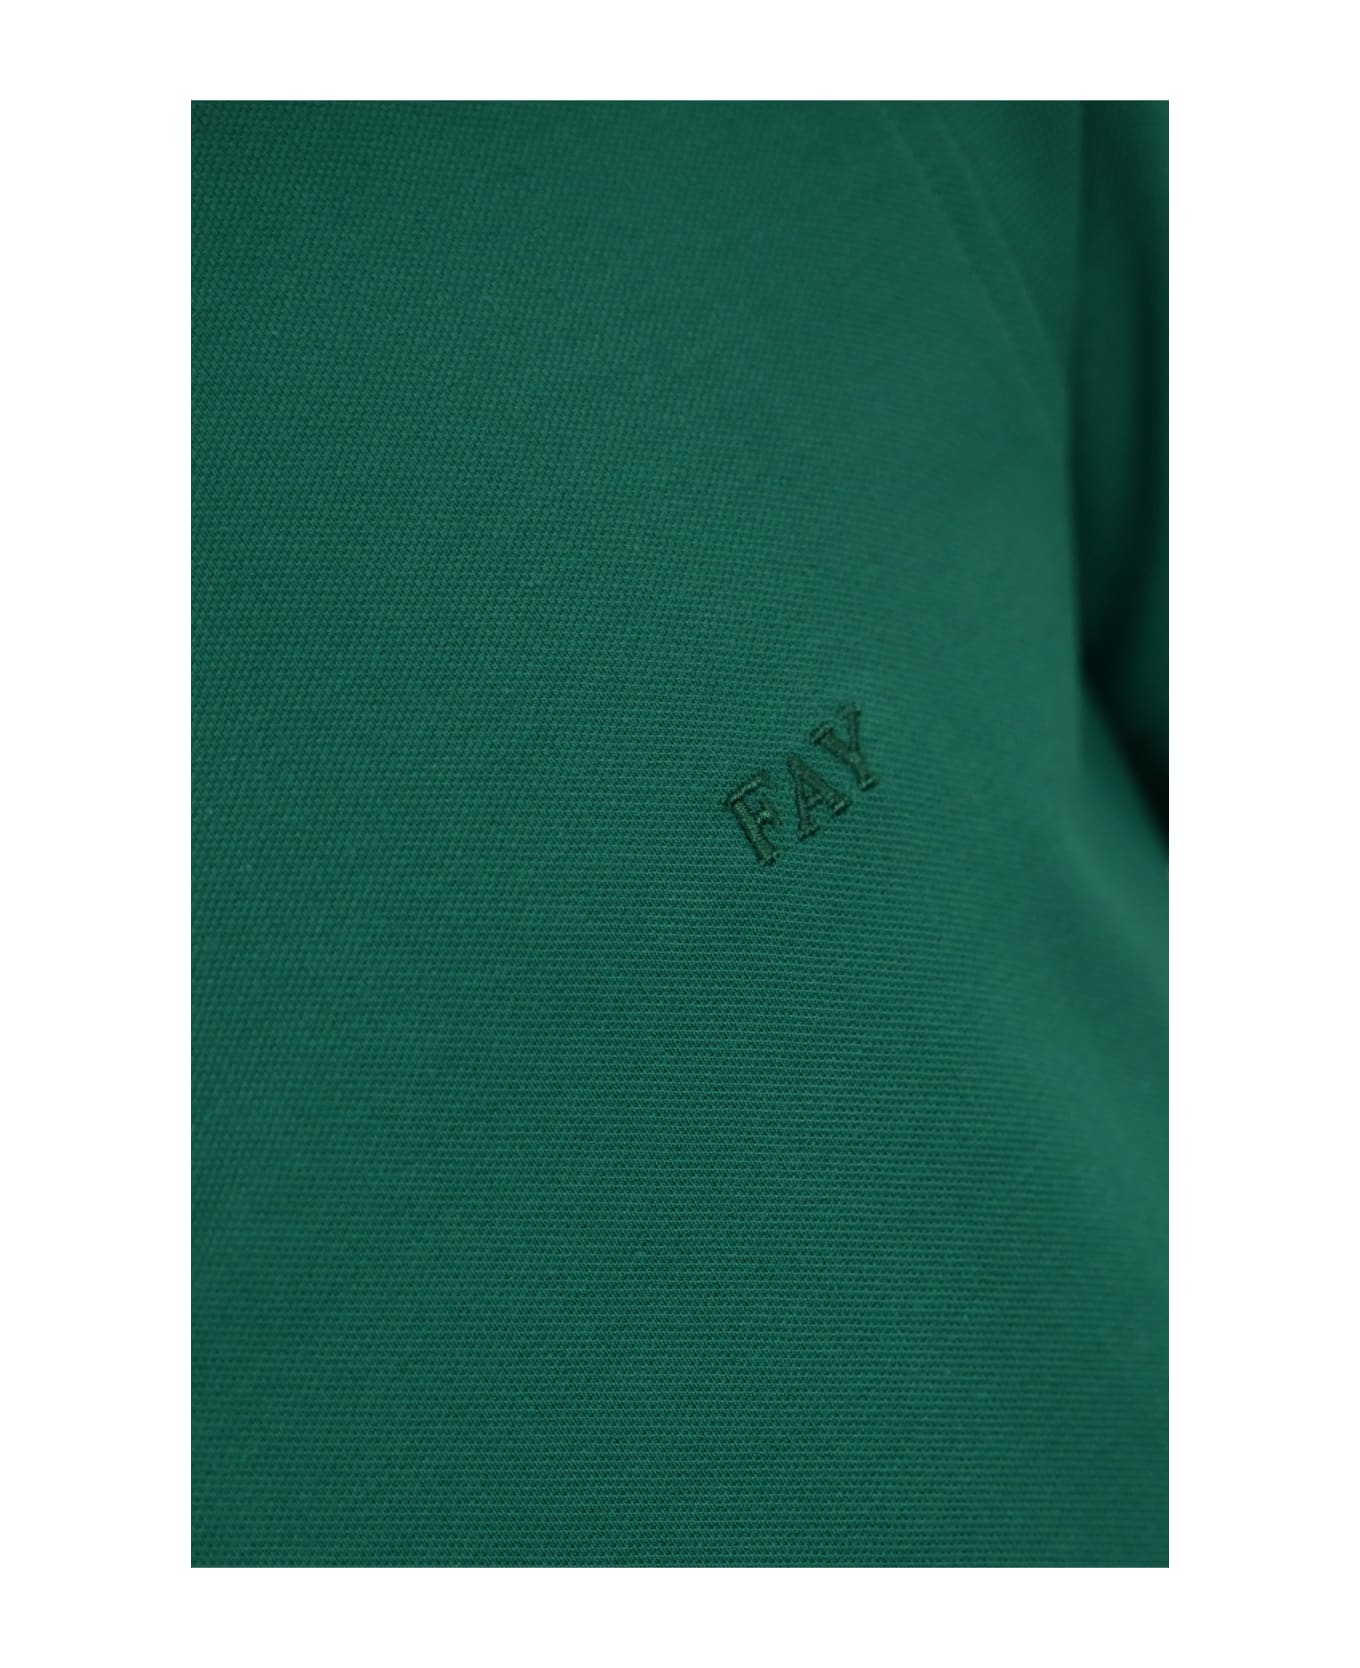 Fay Stretch Cotton Polo Shirt - Verde